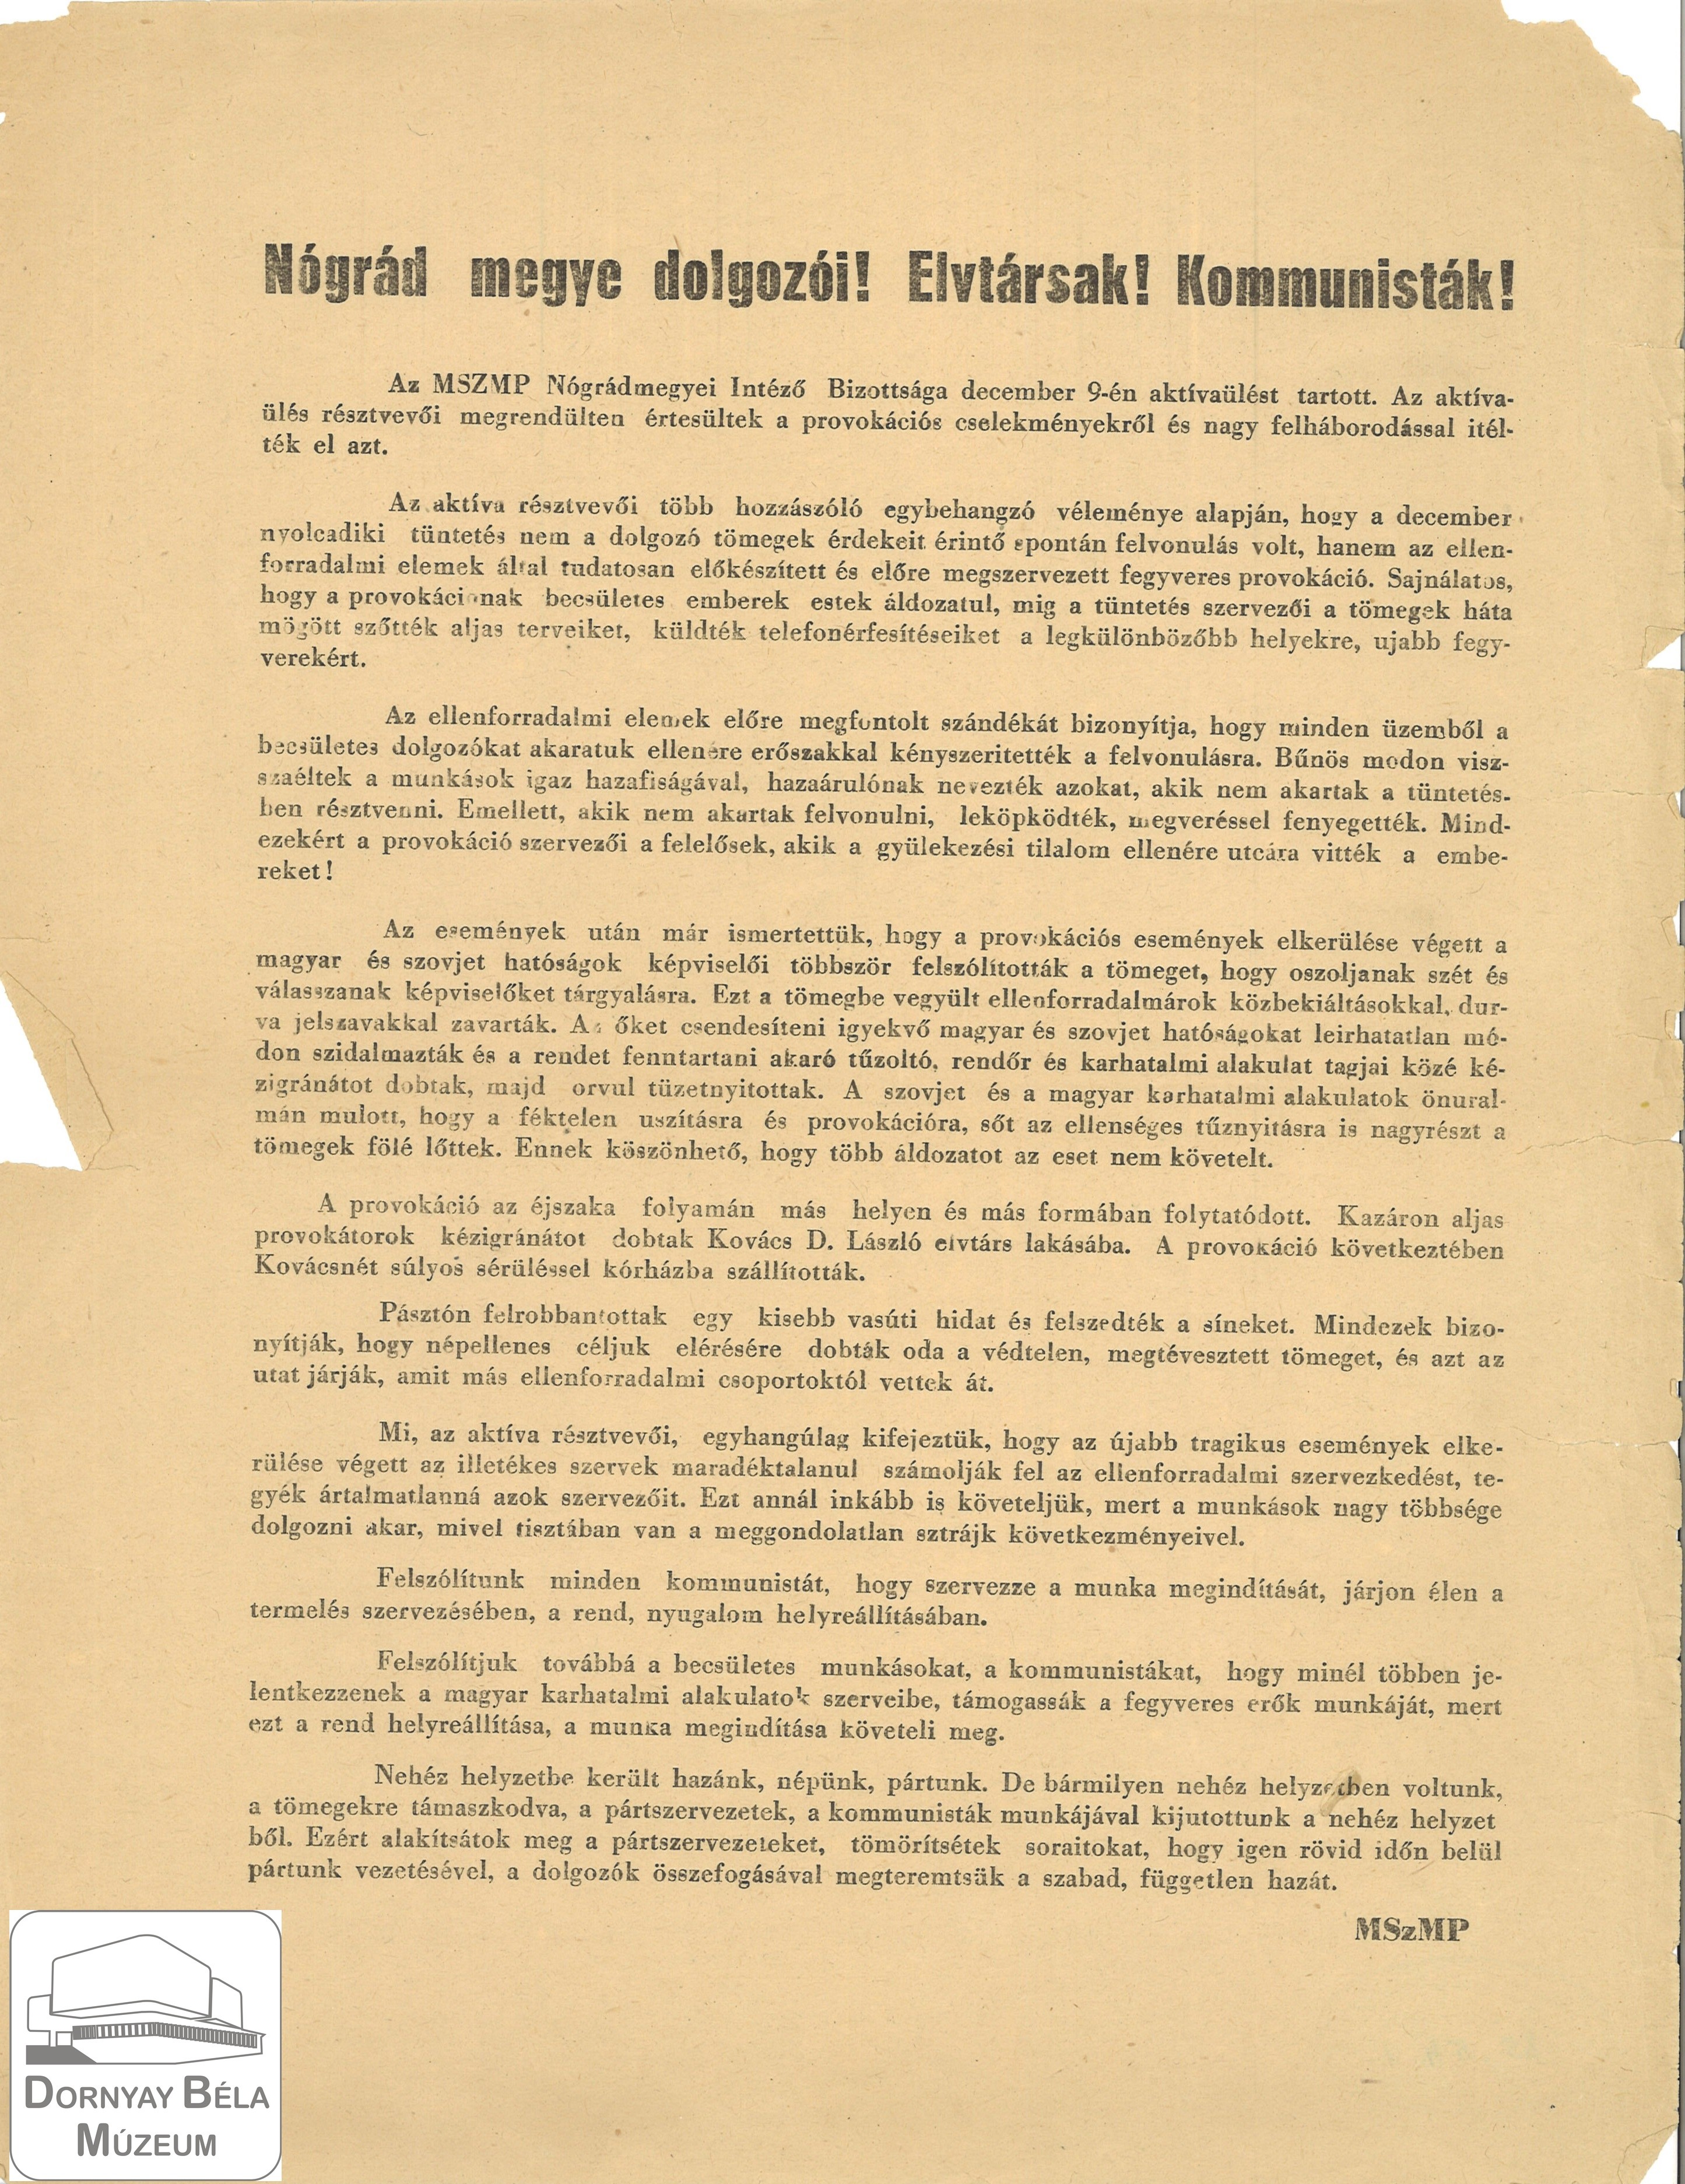 MSZMP Nógrád megyee dolgozói! Elvtársak, kommunisták! (Dornyay Béla Múzeum, Salgótarján CC BY-NC-SA)